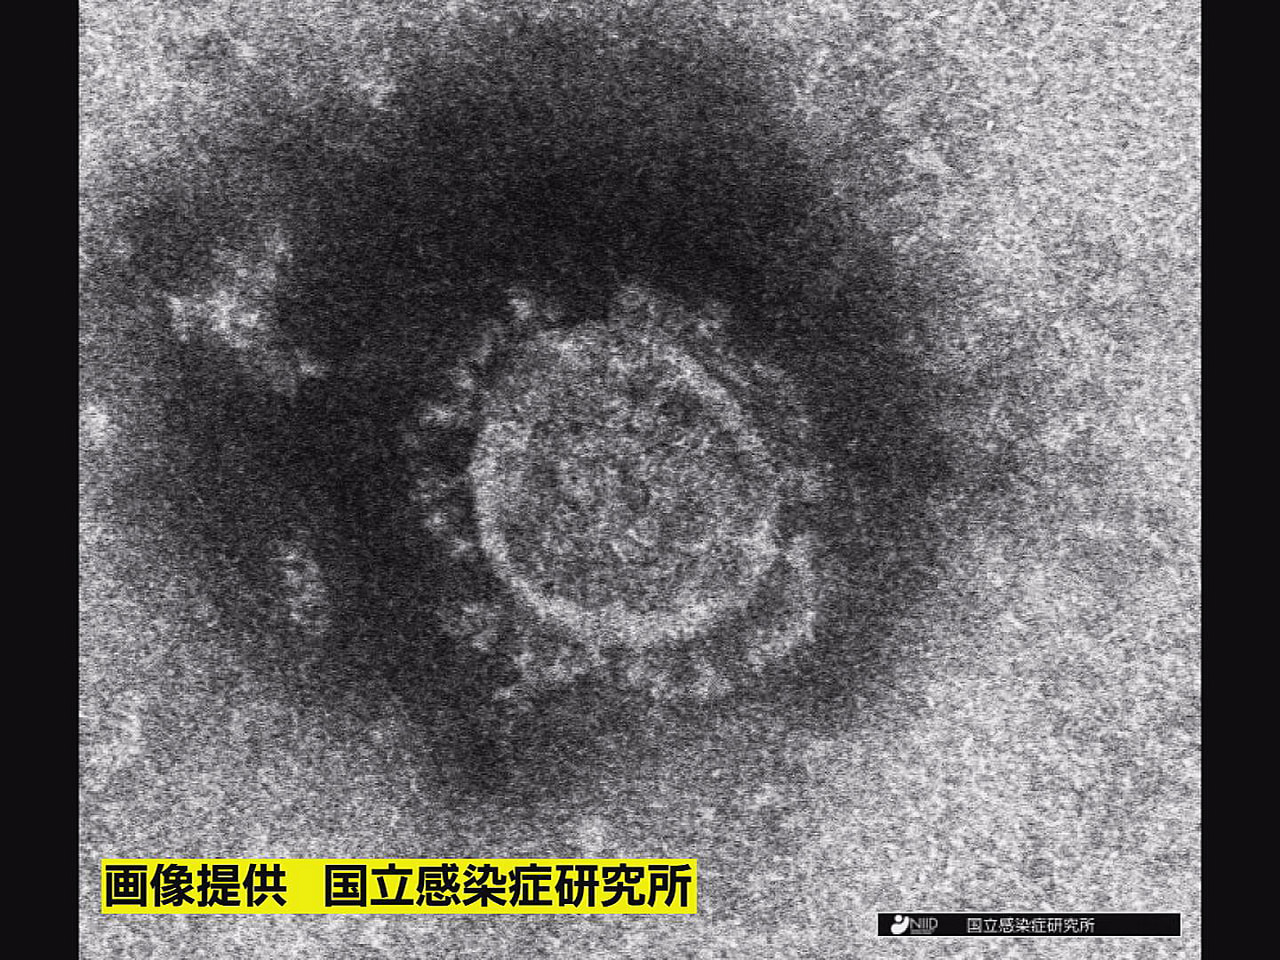 岐阜県は３日、新型コロナウイルスの新規感染者が６２６人確認されたと発表しました。...